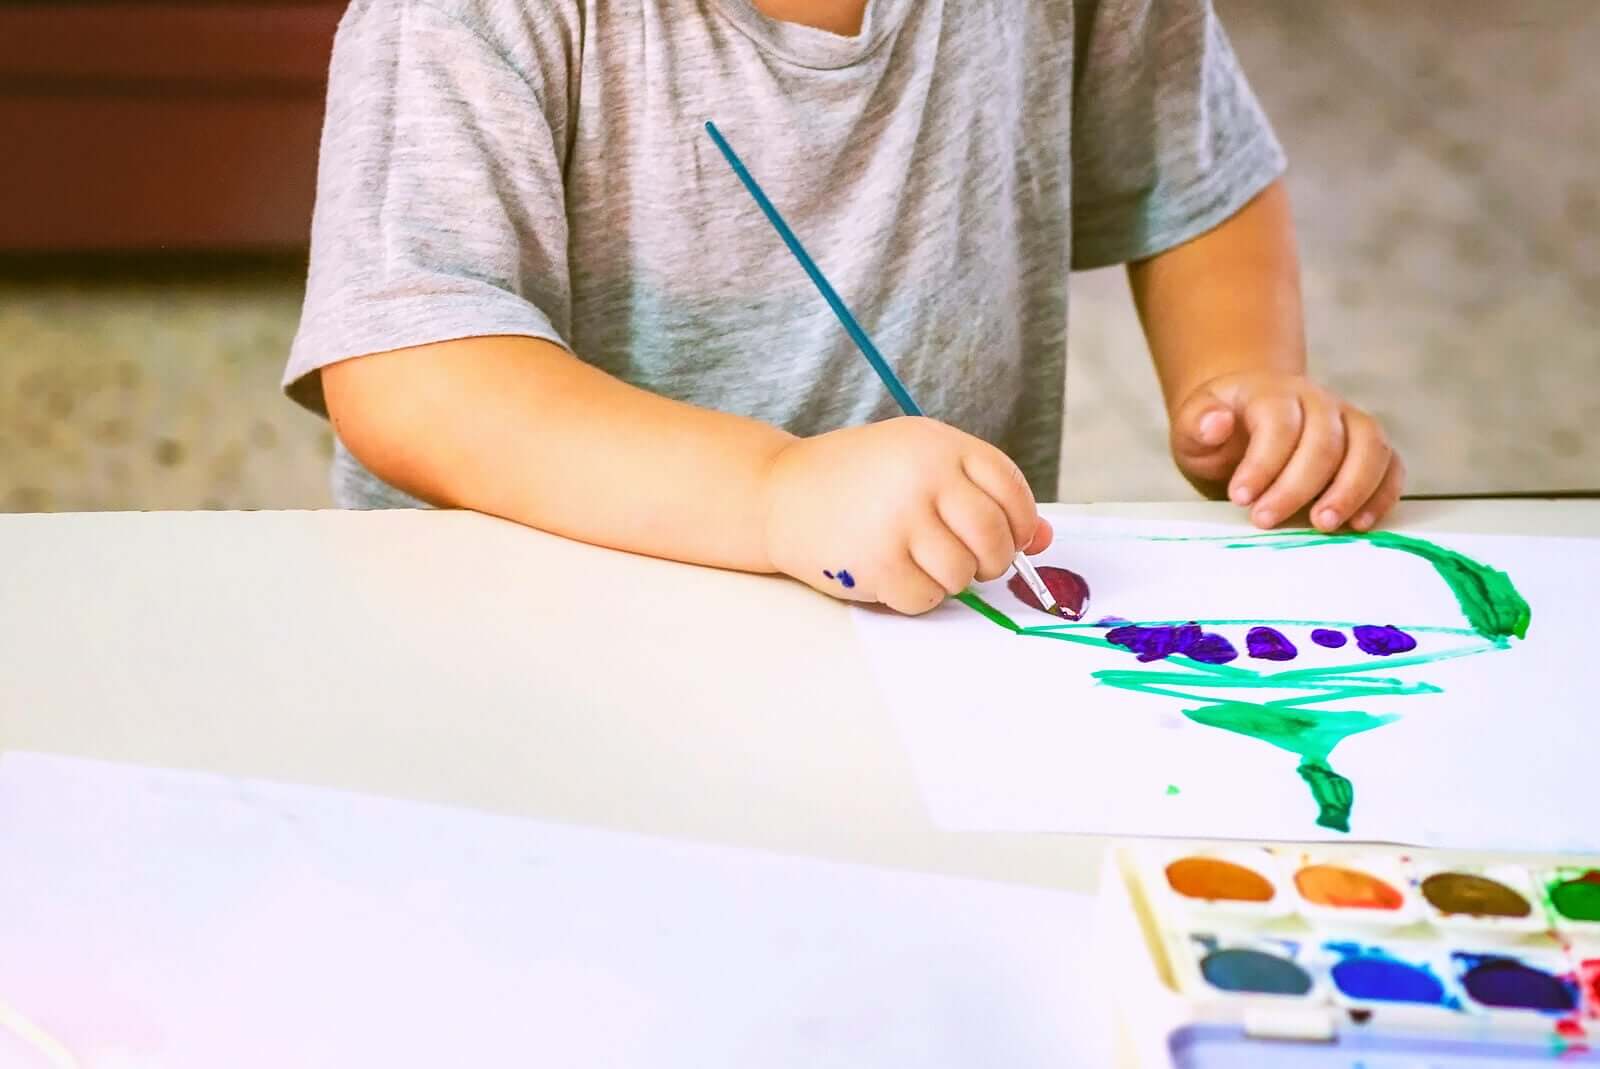 analisar os desenhos das crianças de acordo com as cores usadas